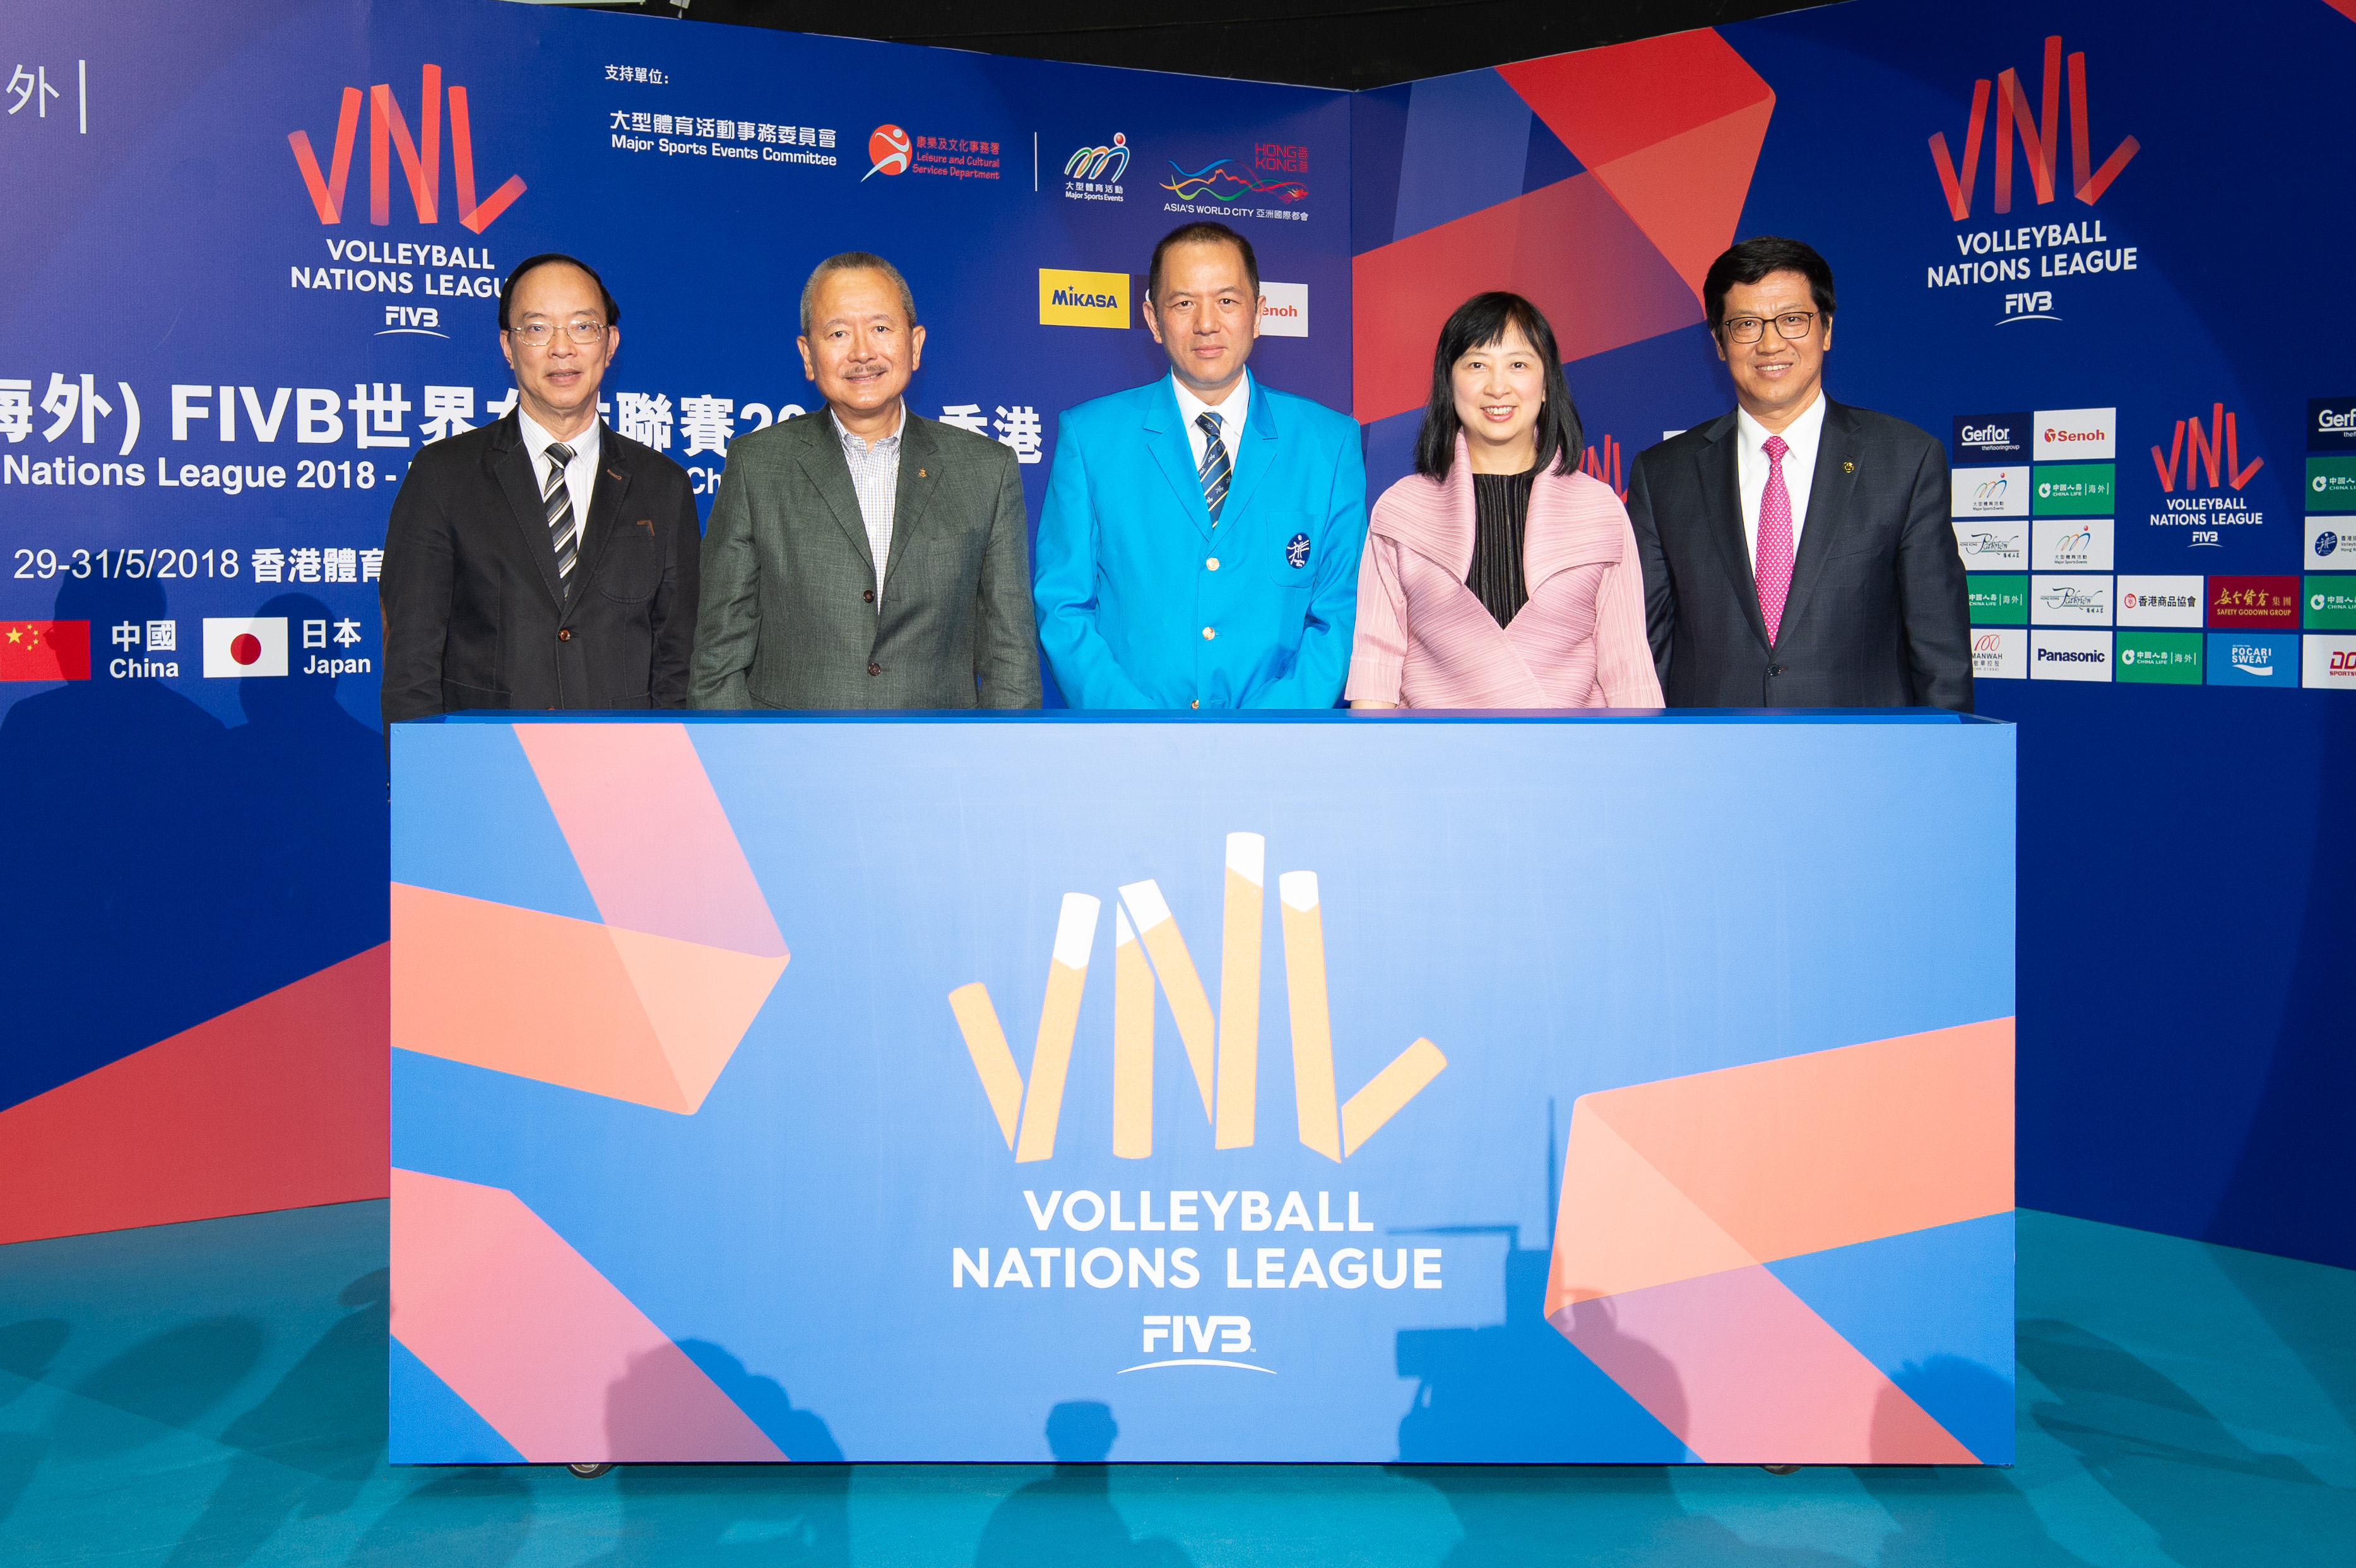 中国人寿(海外)呈献「中国人寿(海外)FIVB世界女排联赛2018－香港」 圆满结束